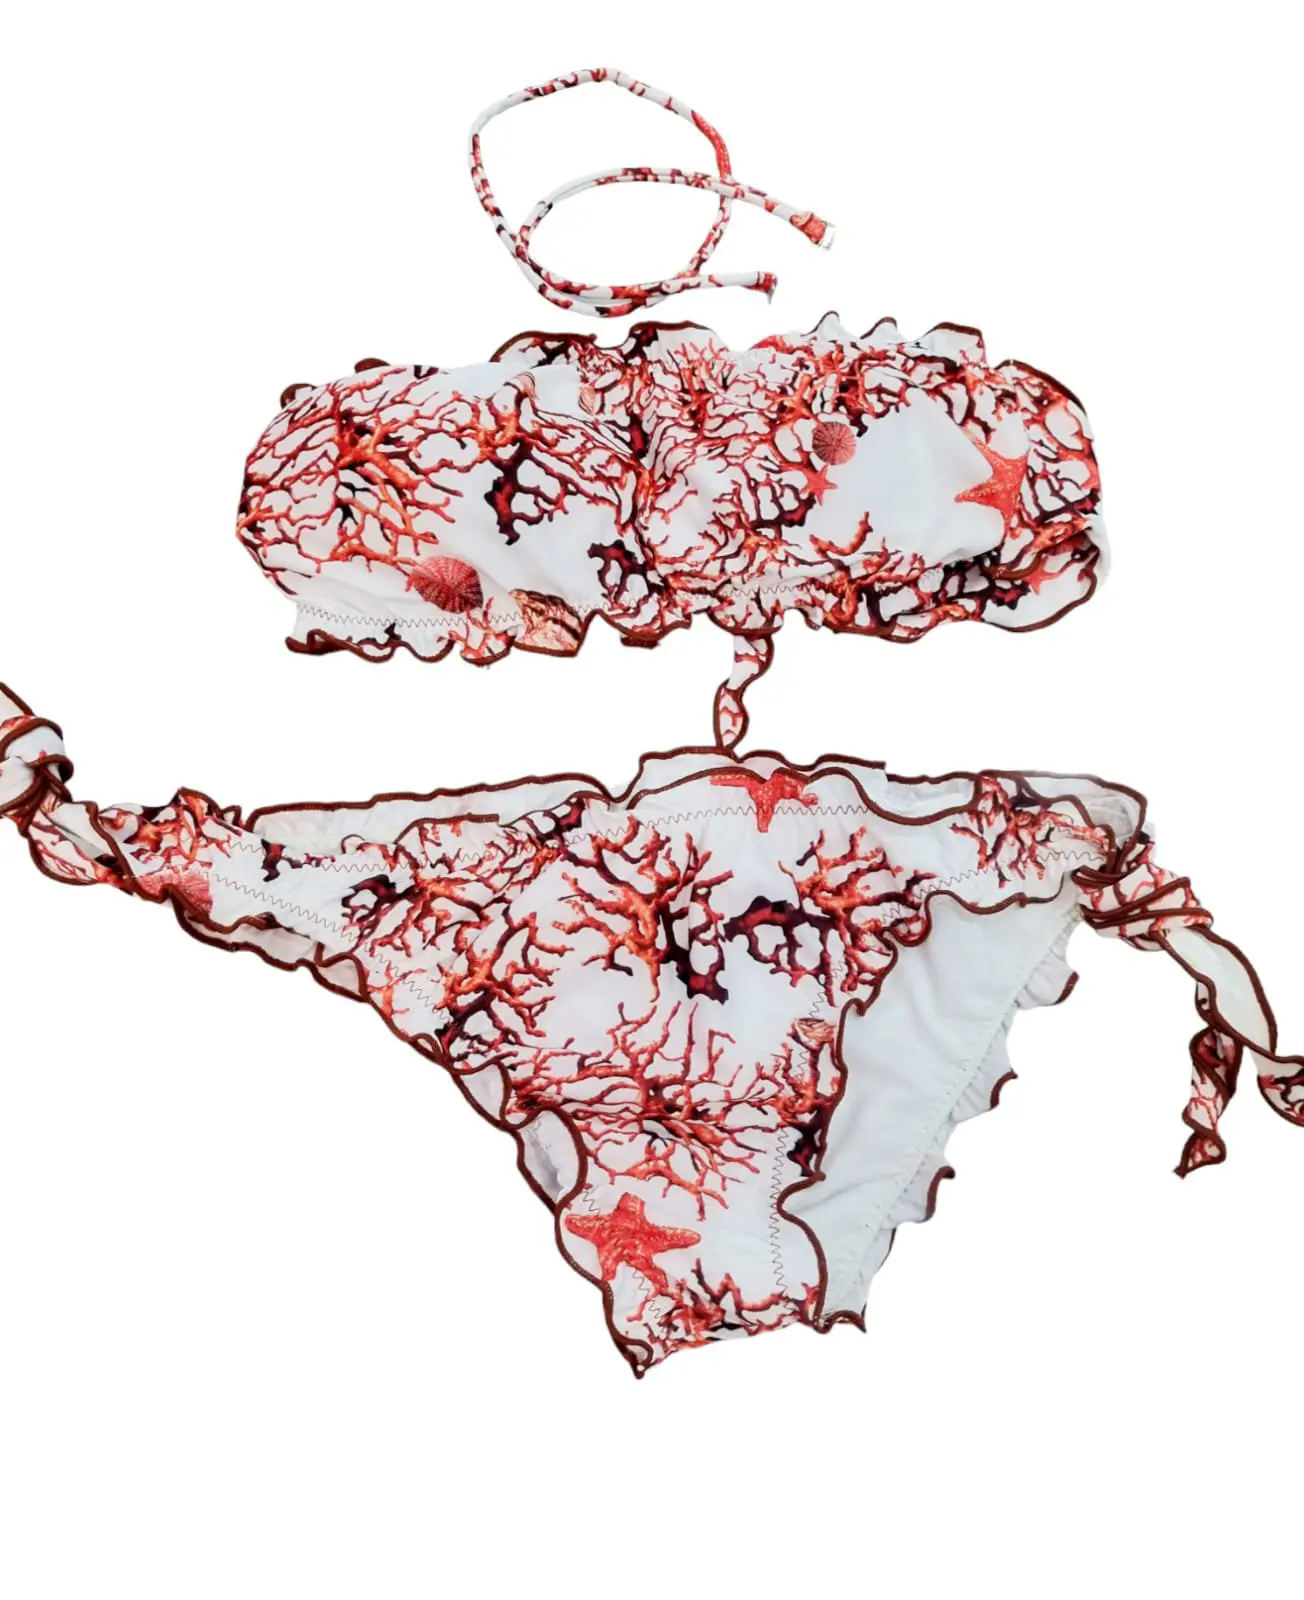 Bikini bandeau rembourré, possibilité de porter une bretelle, culotte réglable avec boucle motif corail rouge.